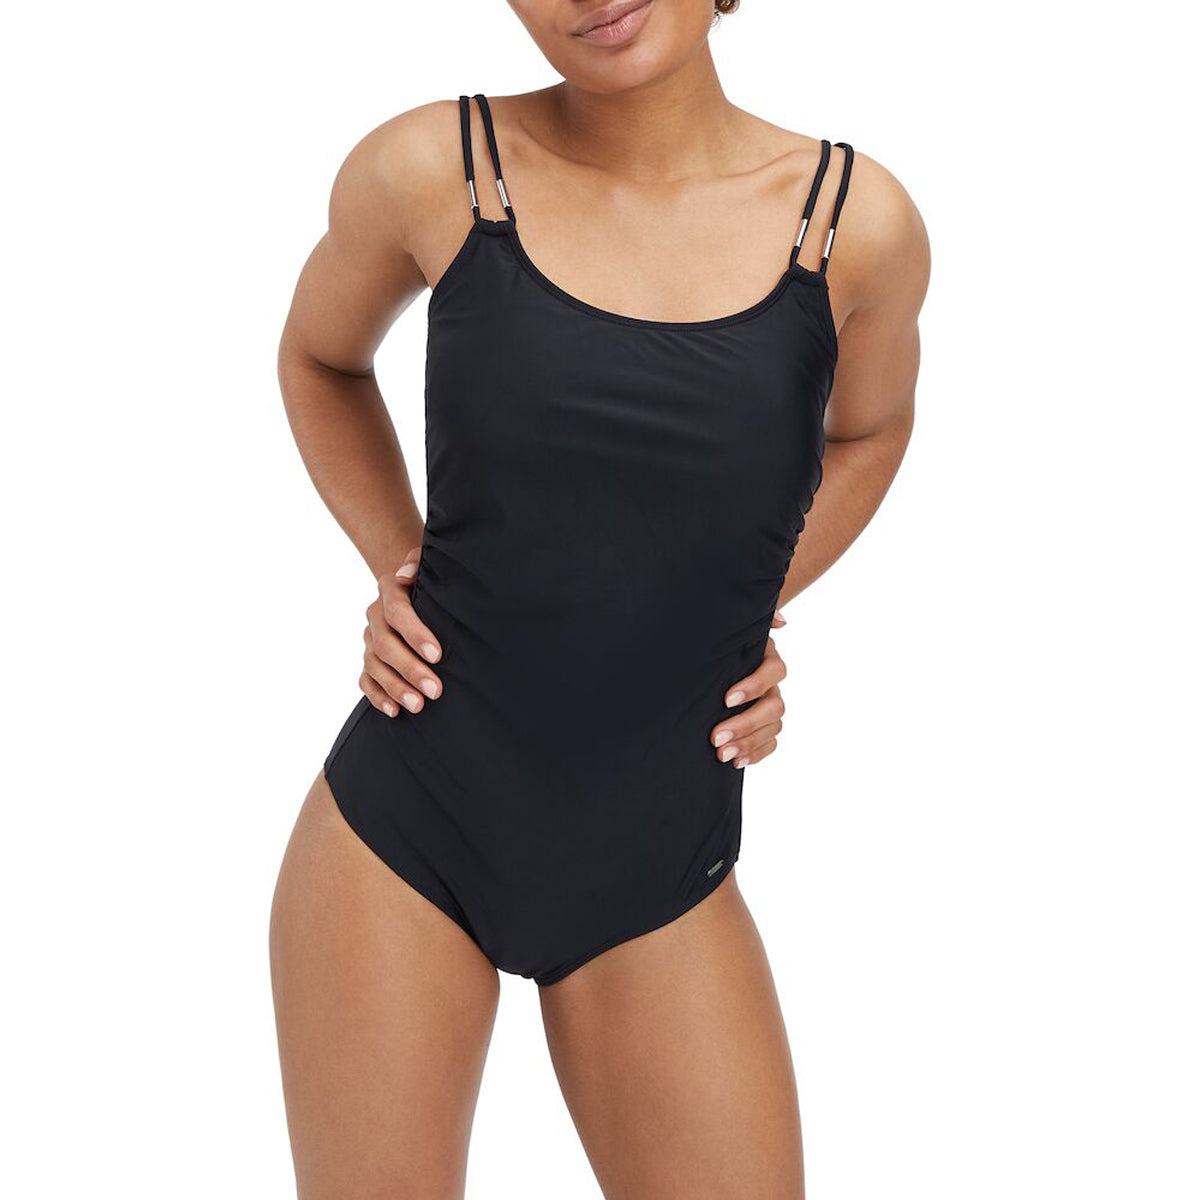 Firefly M&Mc Nana Swimsuit For Women, Black